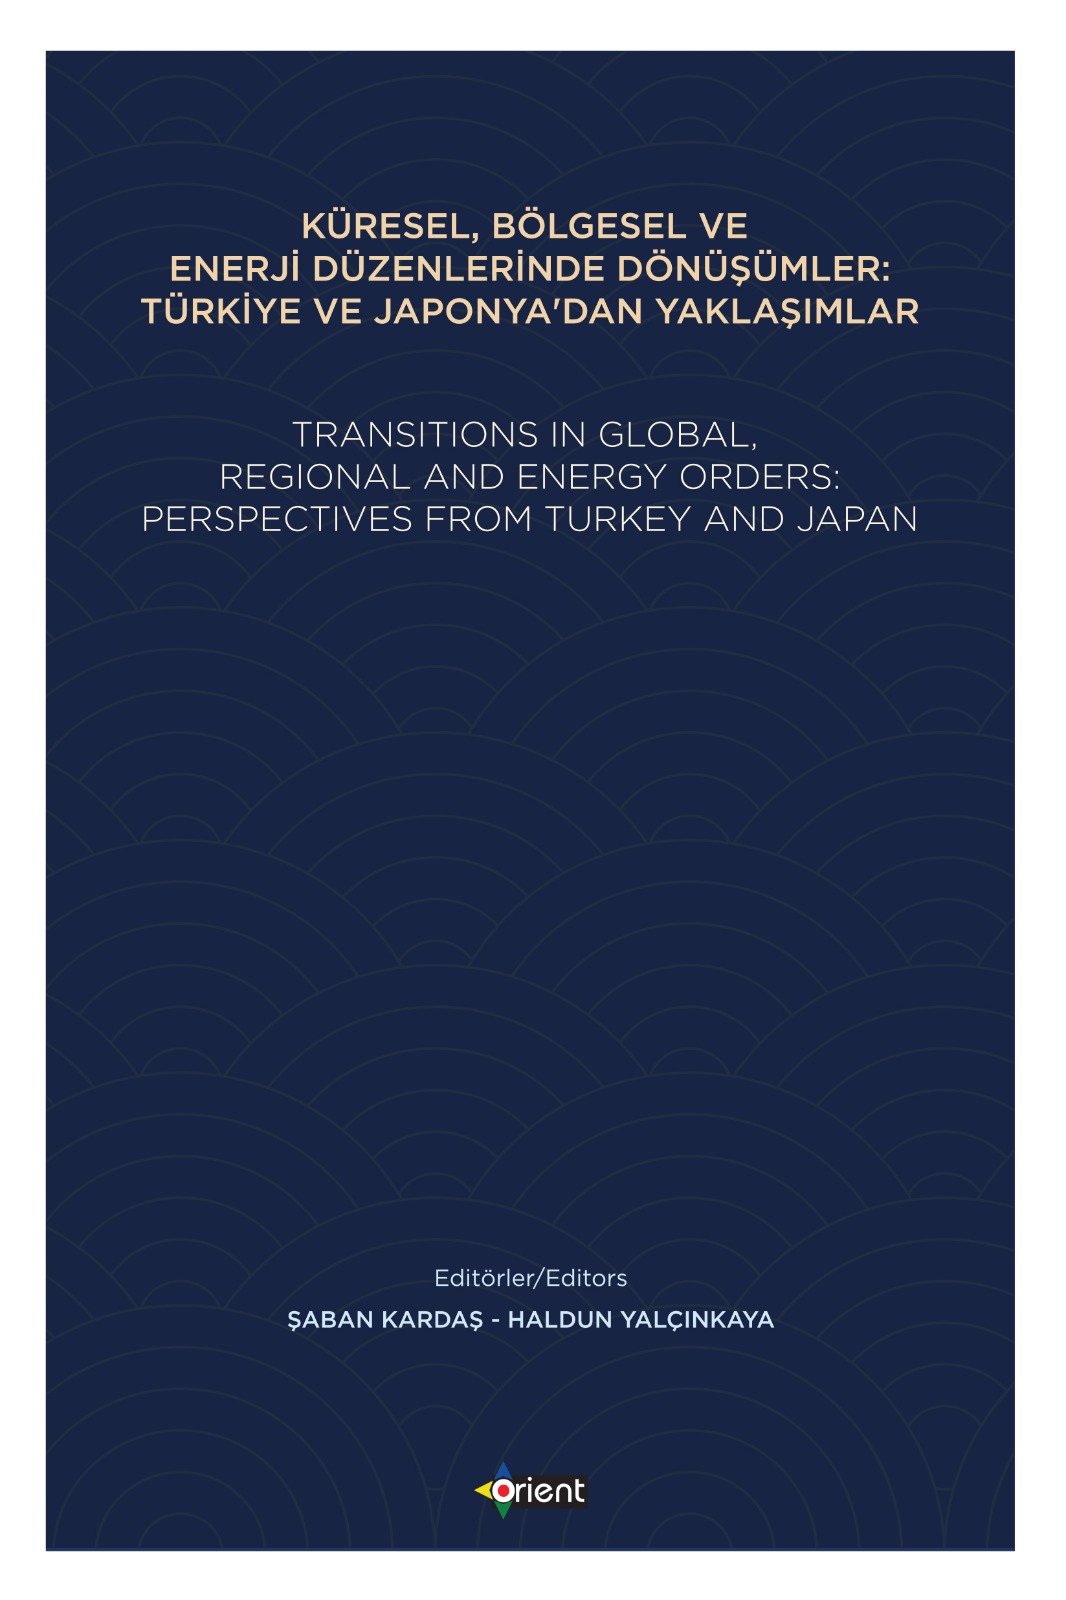 Küresel, Bölgesel ve Enerji Düzenlerinde Dönüşümler: Türkiye ve Japonya'dan Yaklaşımlar - Transitions In Global, Regional and Energy Orders: Perspectives From Turkey and Japan